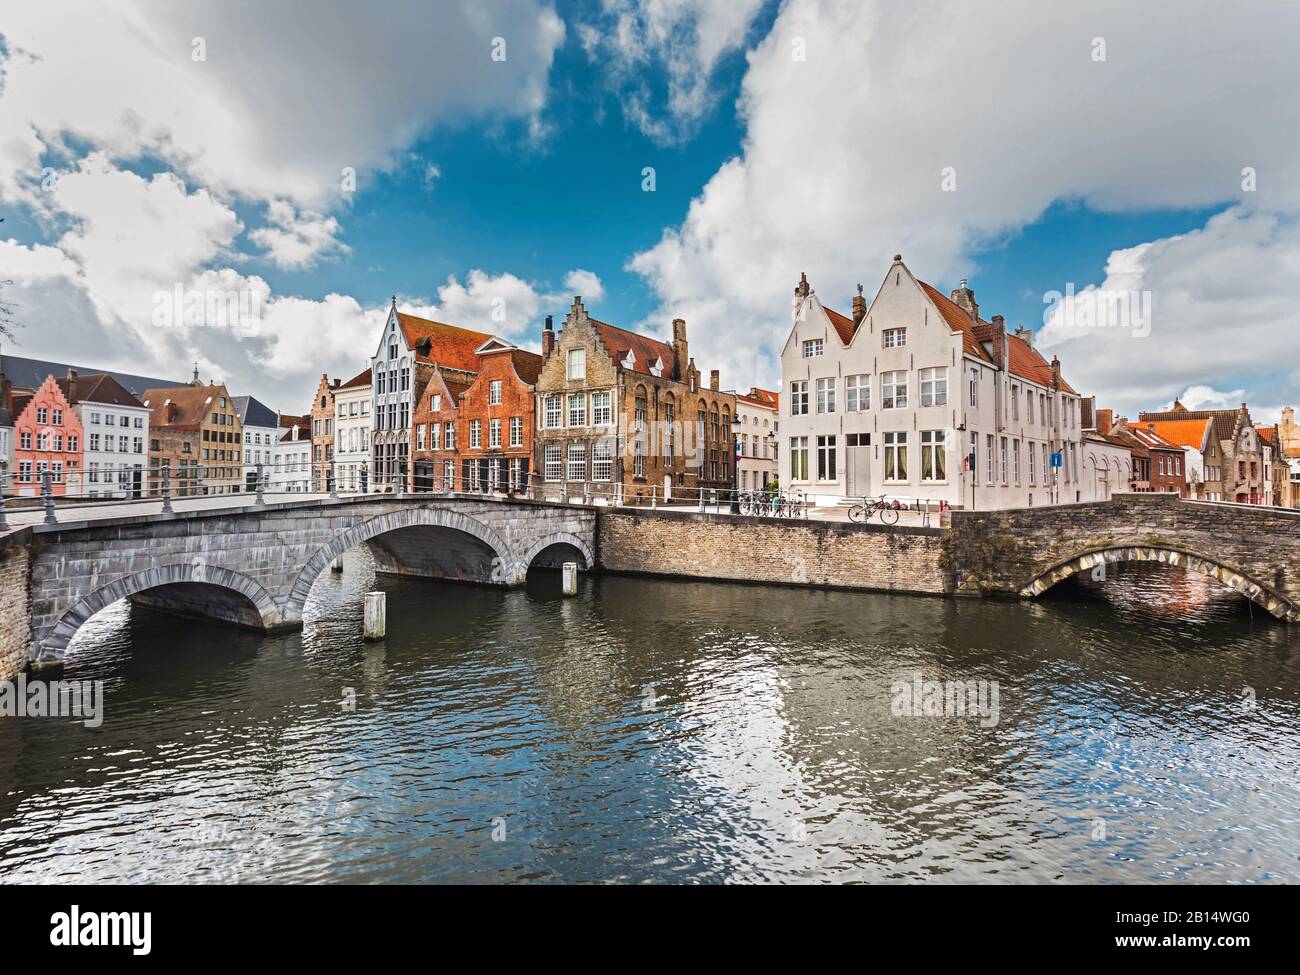 Les vieilles maisons en pierre colorées près du canal sont le point de repère de Bruges, Belgique. Les canaux de Bruges avec de vieux ponts en pierre sont une attraction touristique célèbre. Banque D'Images